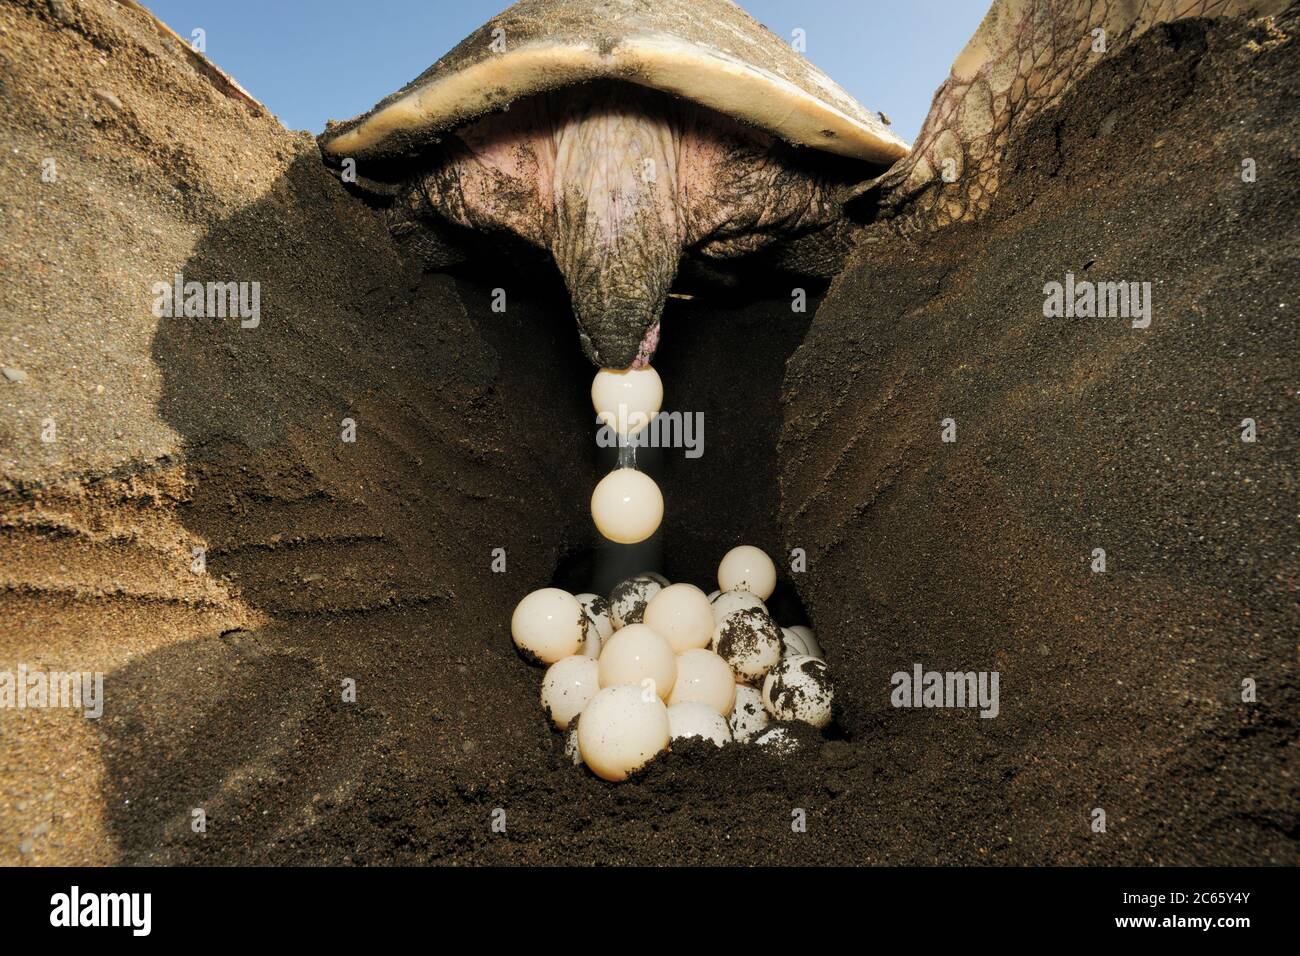 Después de cavar un agujero de 50 a 30 centímetros de profundidad con sus aletas traseras, la tortuga marina de la ridley de oliva (Lepidochelys olivacea) pone aproximadamente 100 huevos. [tamaño de un solo organismo: 80 cm] Foto de stock